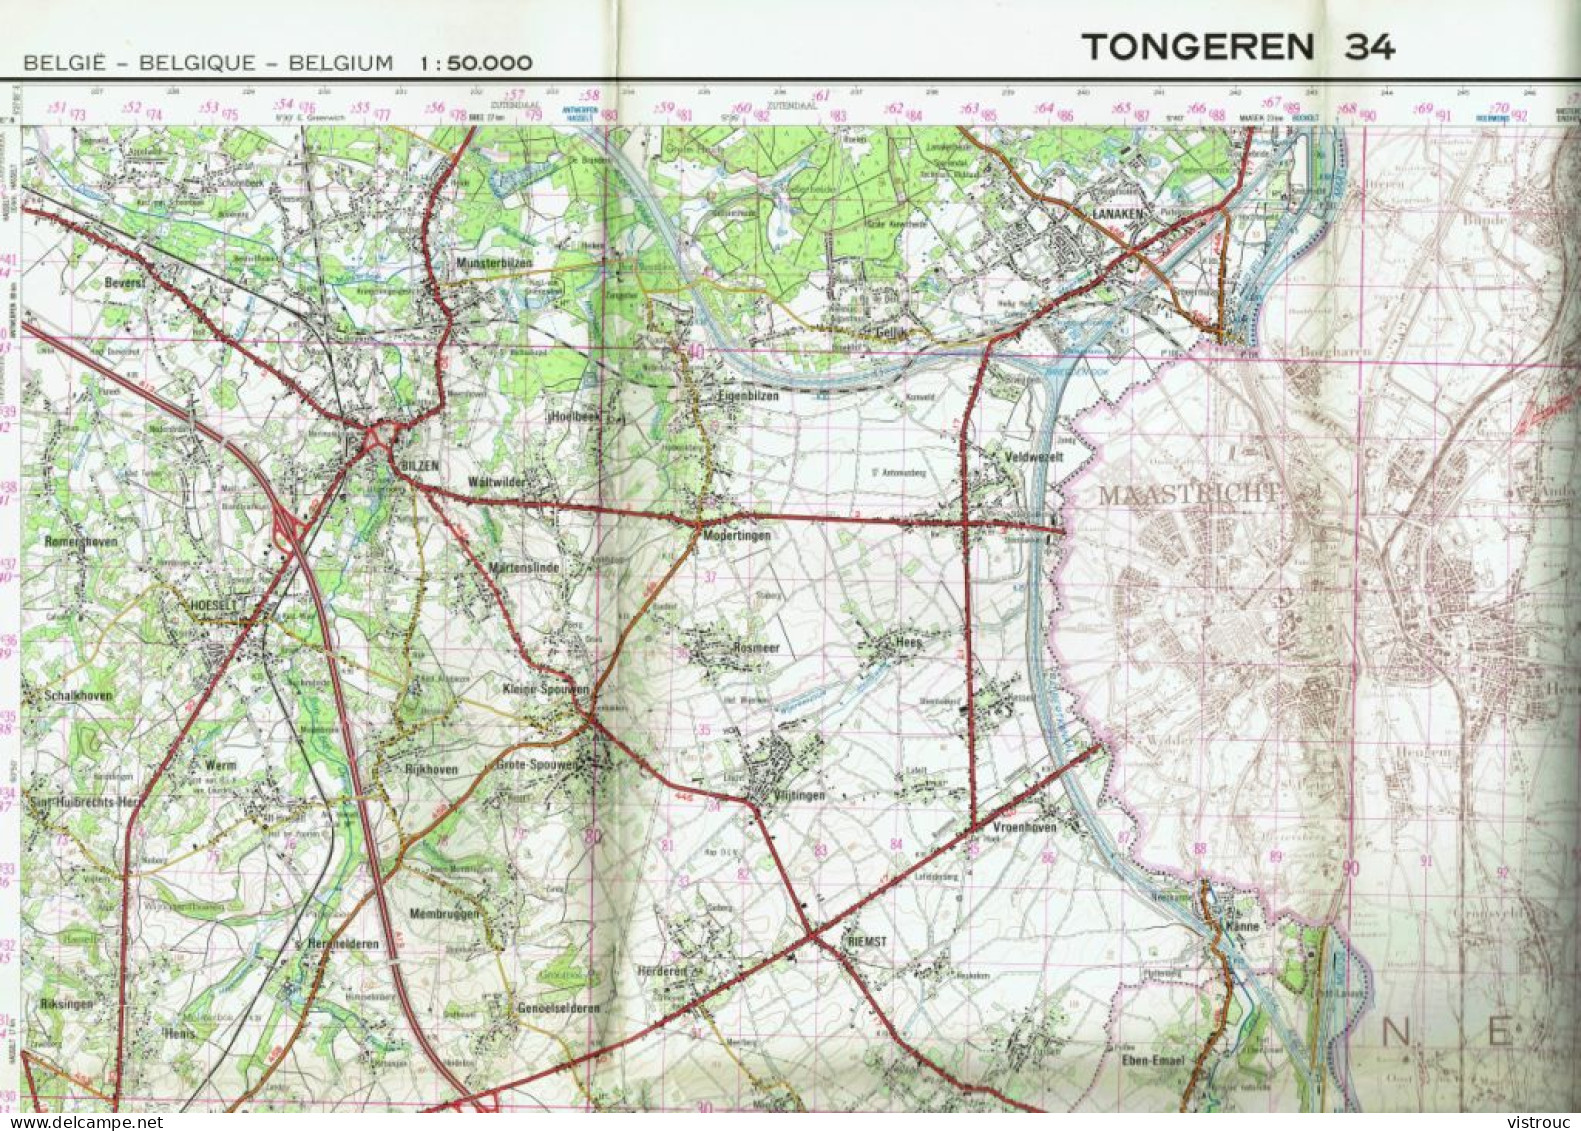 Institut Géographique Militaire Be - "TONGRES-TONGEREN" - N° 34 - Edition: 1977 - Echelle 1/50.000 - Topographische Karten